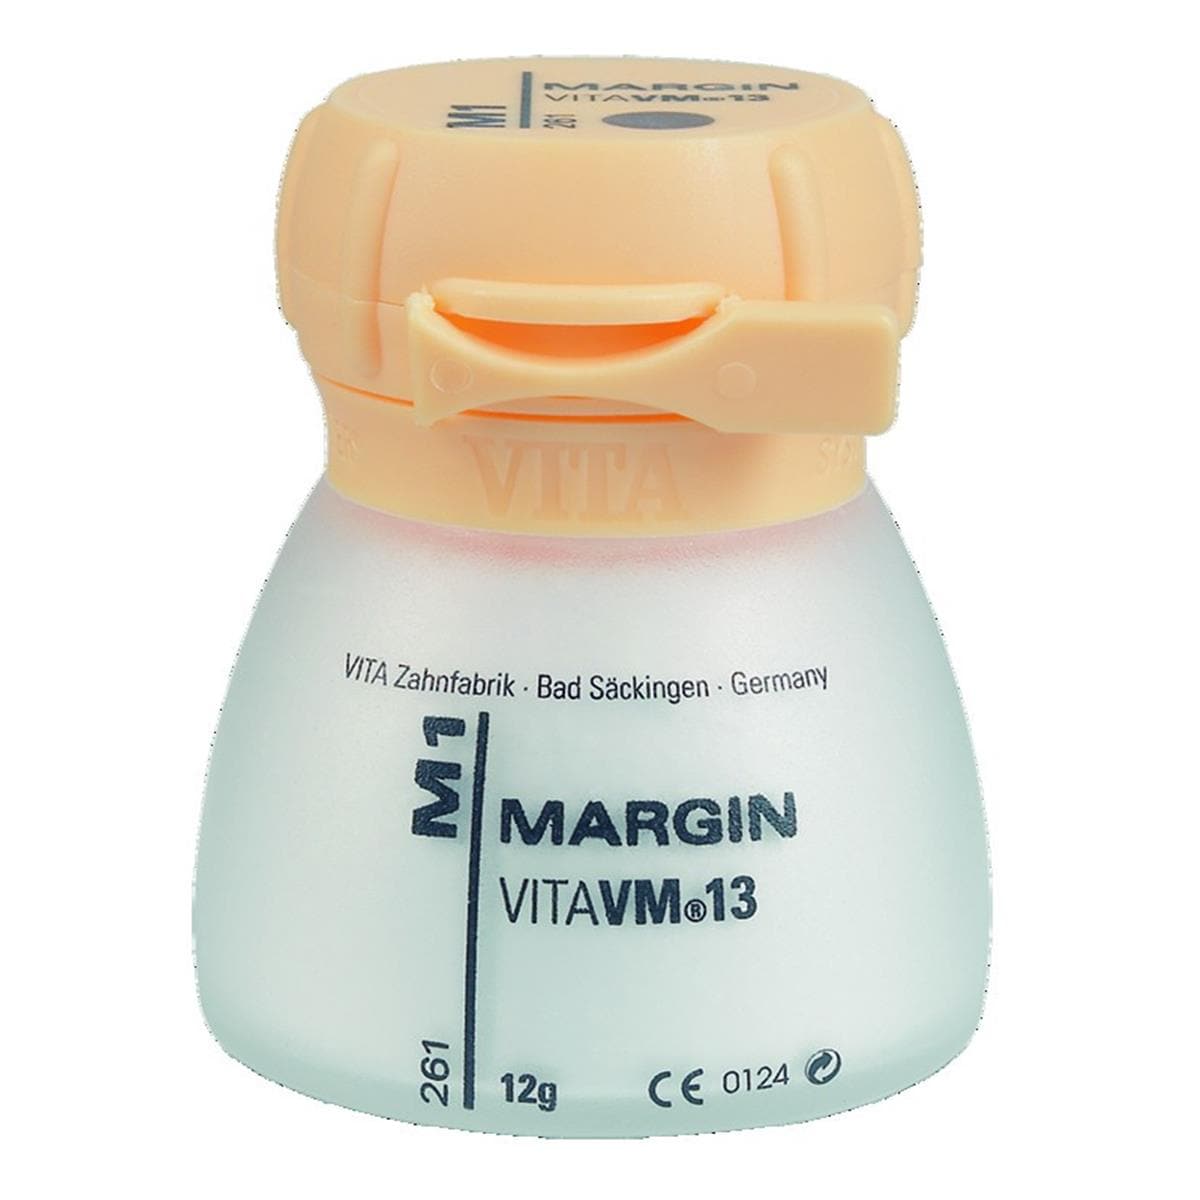 VM13 VITA - Margin - M8 - Le pot de 12 g